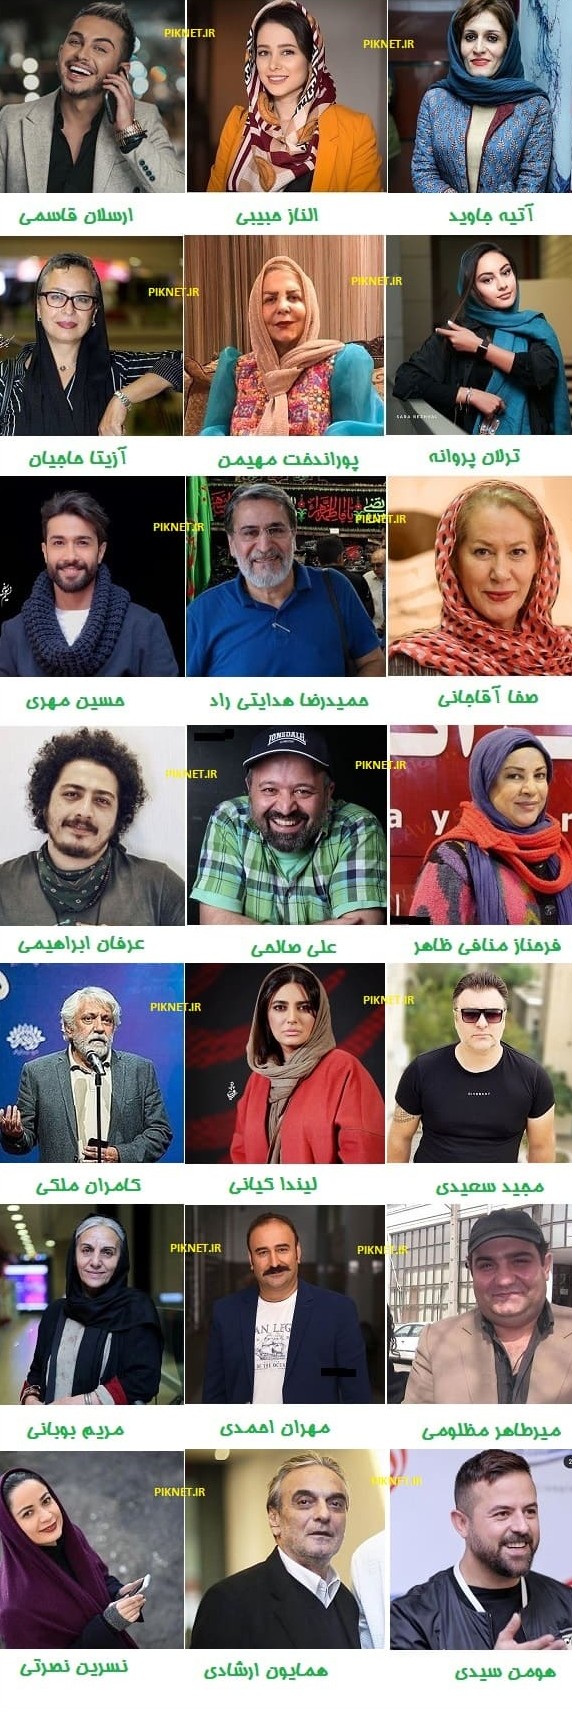 اسامی بازیگران سریال تا ثریا با عکس و بیوگرافی + داستان